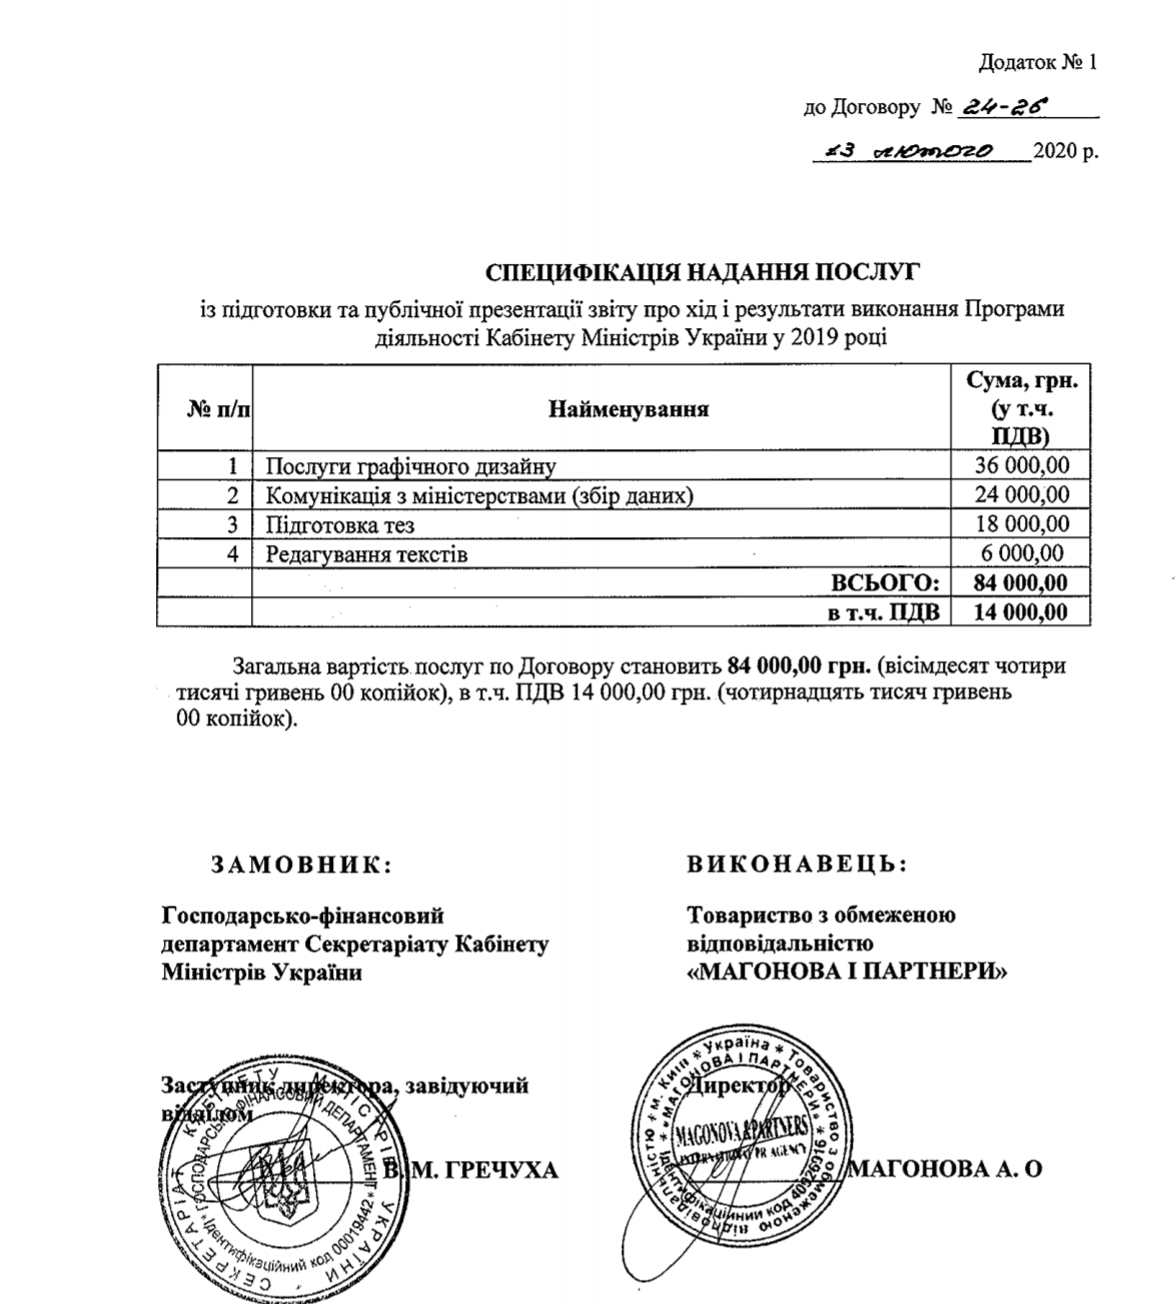 Кабмін звинуватили в піарі за 84 тис. гривень: спливли подробиці скандалу